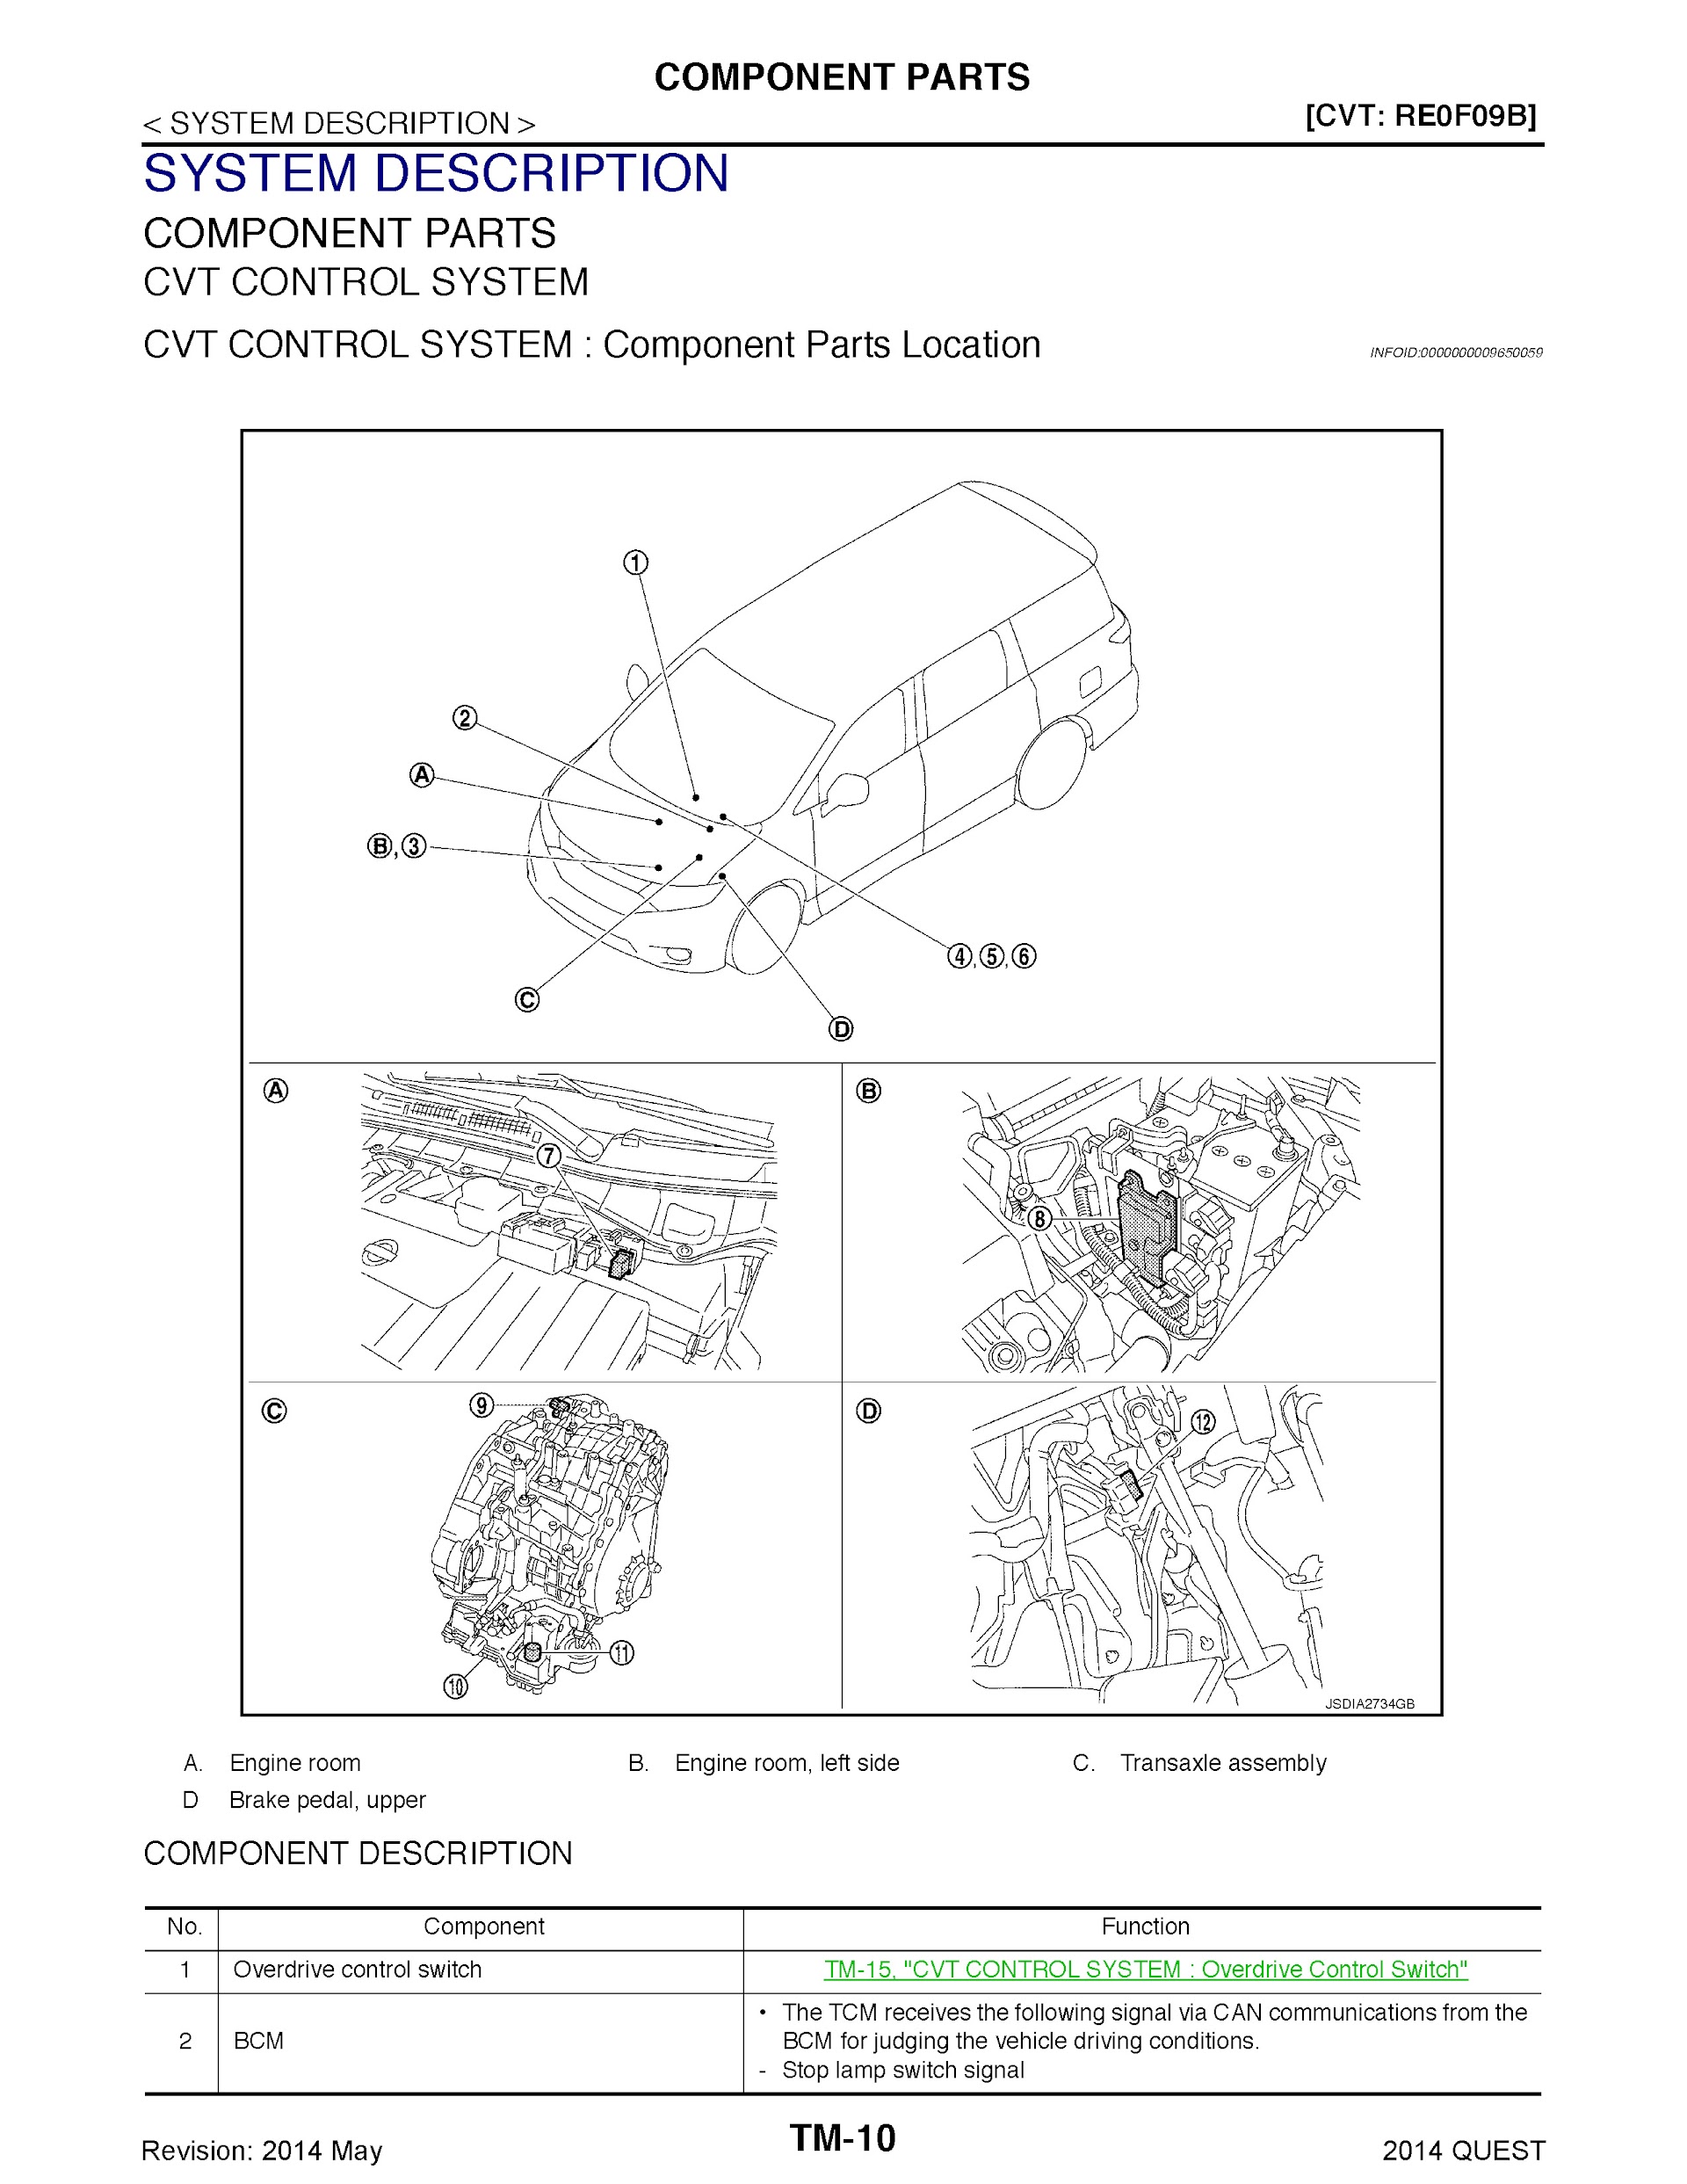 2014 Nissan Quest Repair Manual